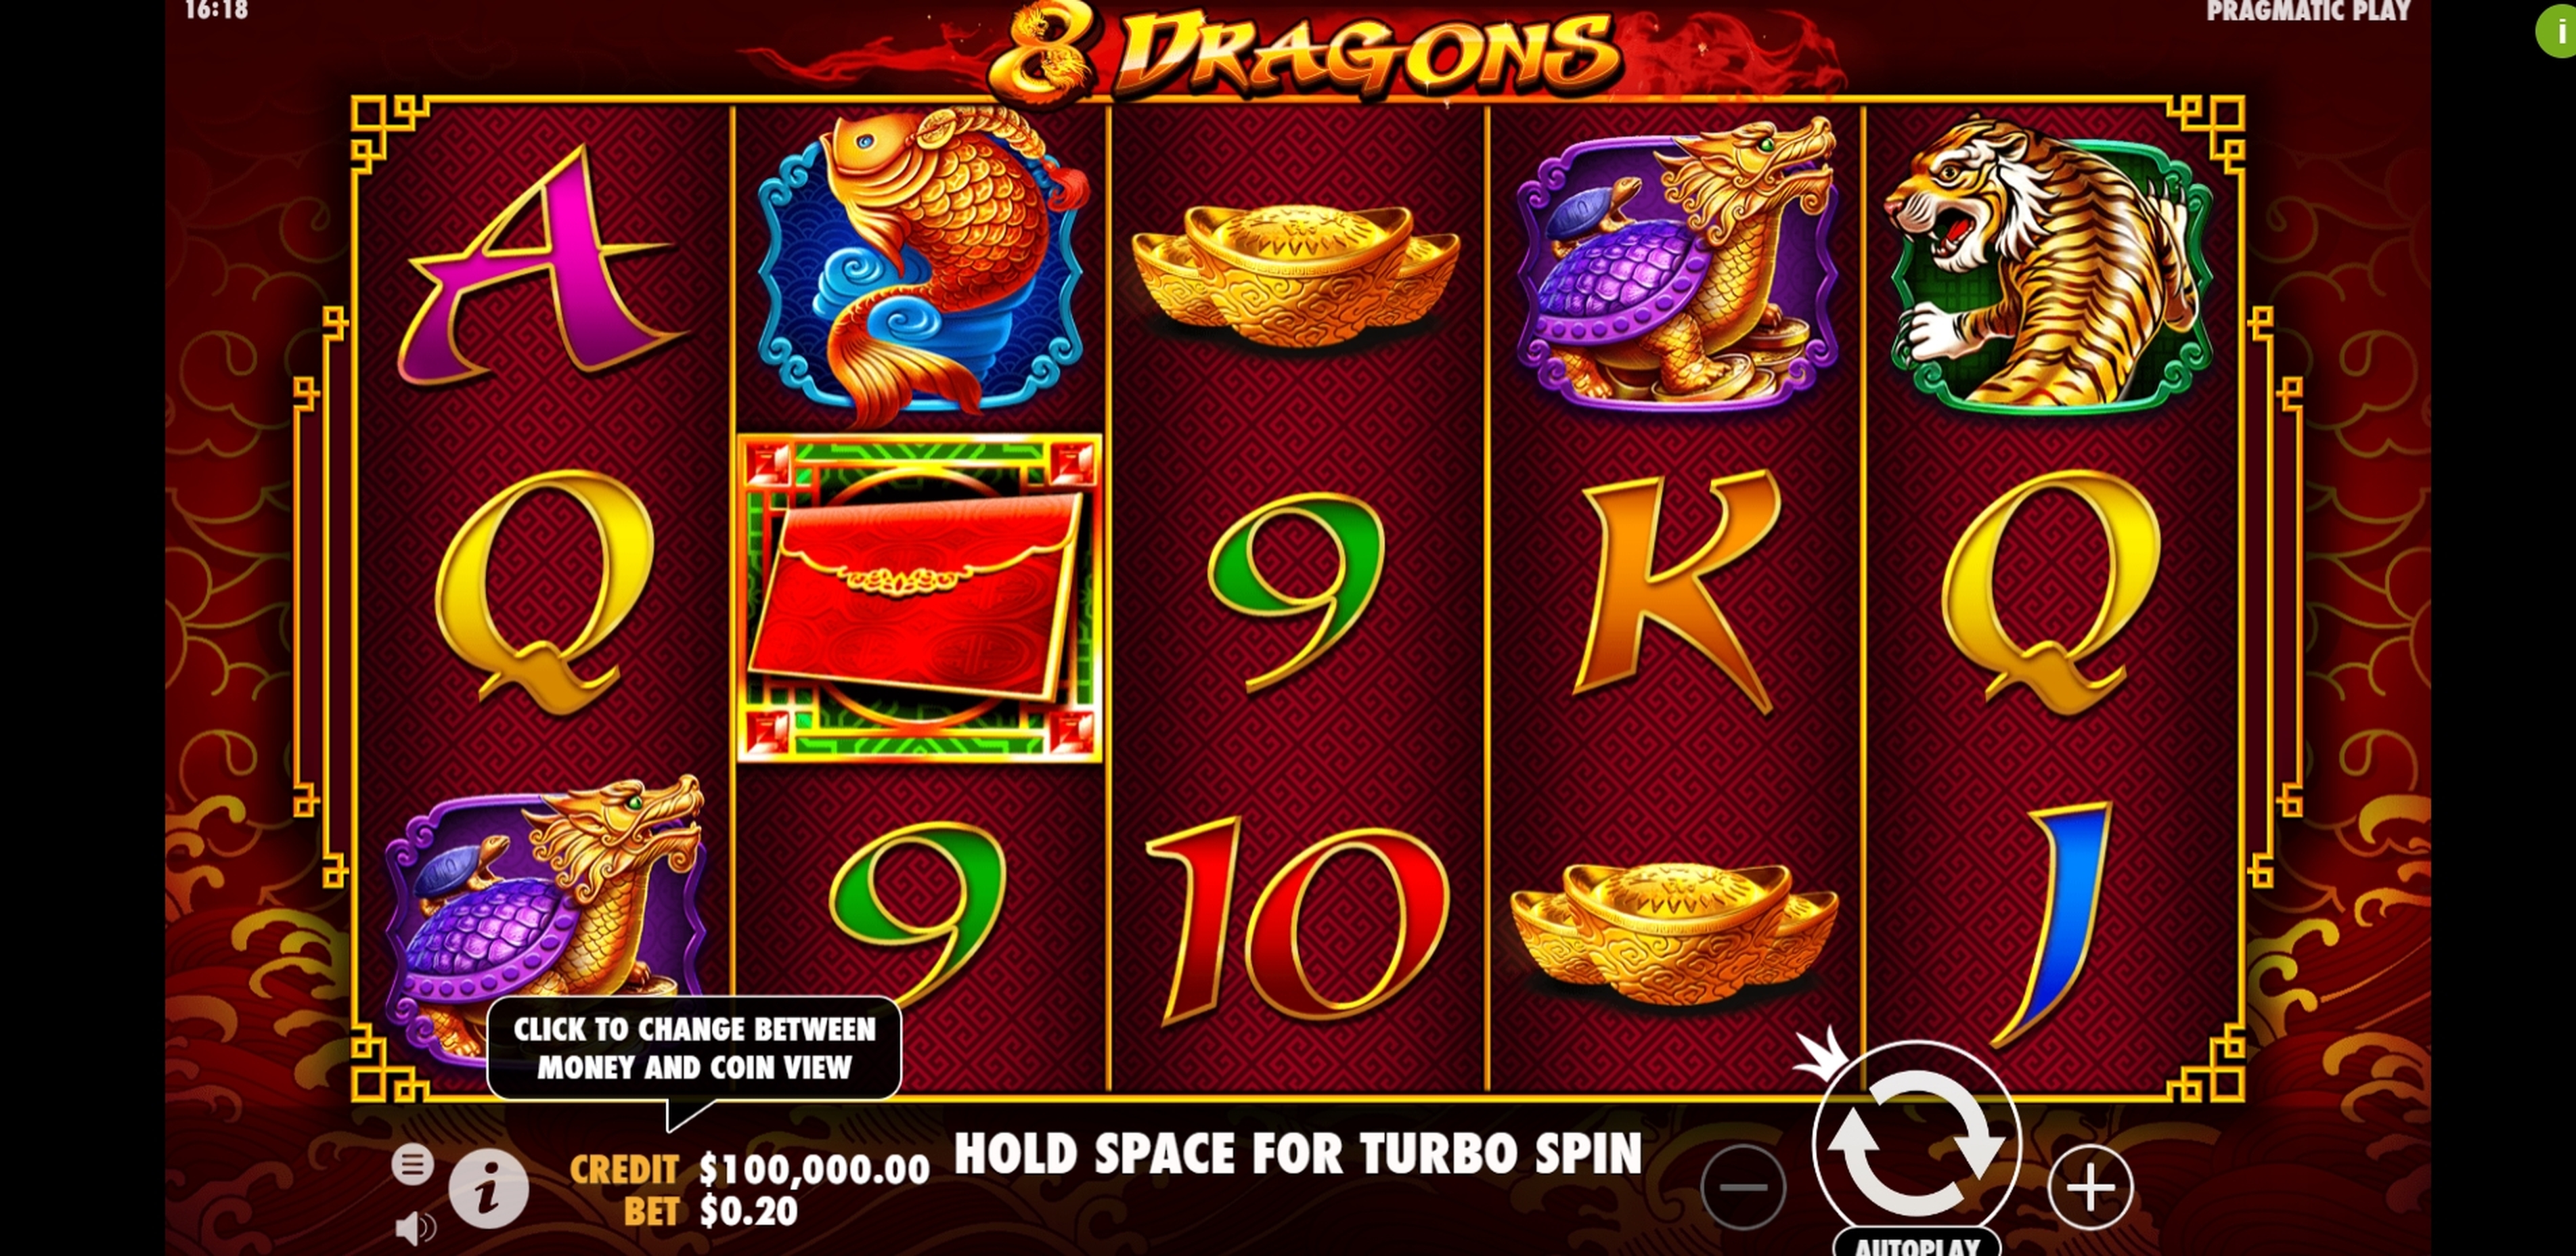 Reels in 8 Dragons Slot Game by Pragmatic Play